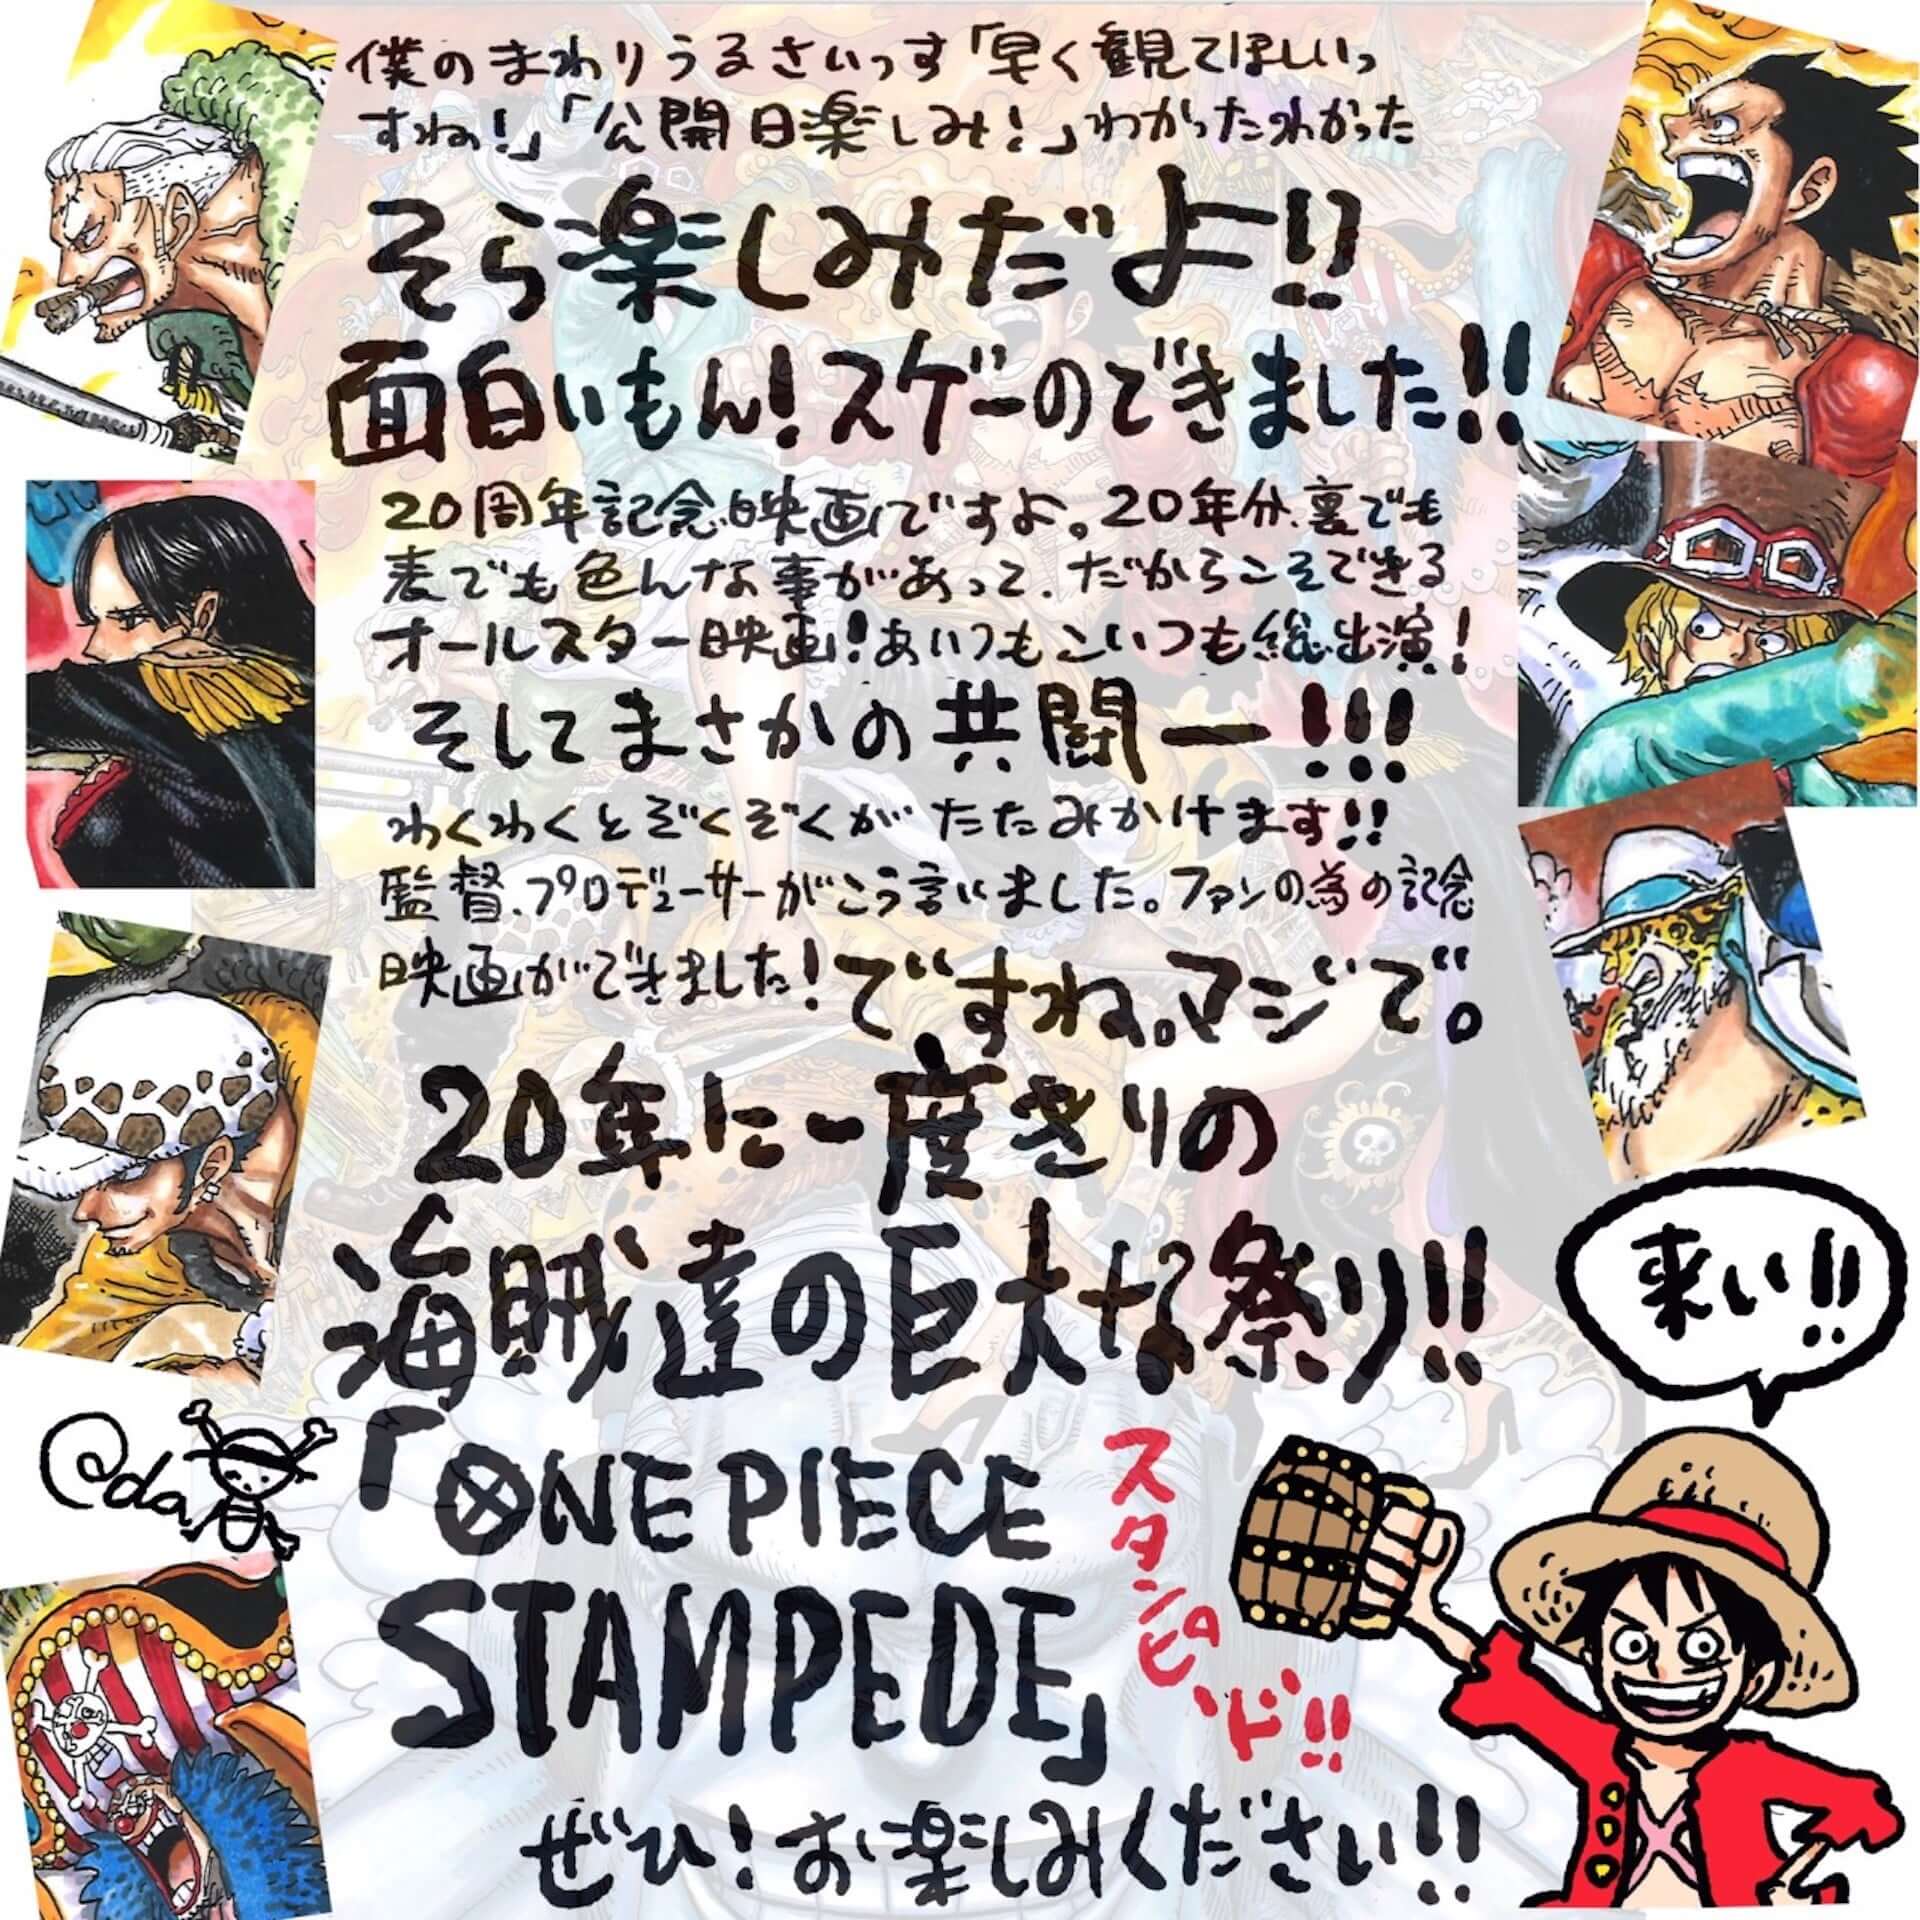 One Piece 原作者 尾田栄一郎直筆メッセージが到着 劇場版 One Piece Stampede 明日公開 19年8月8日 エキサイトニュース